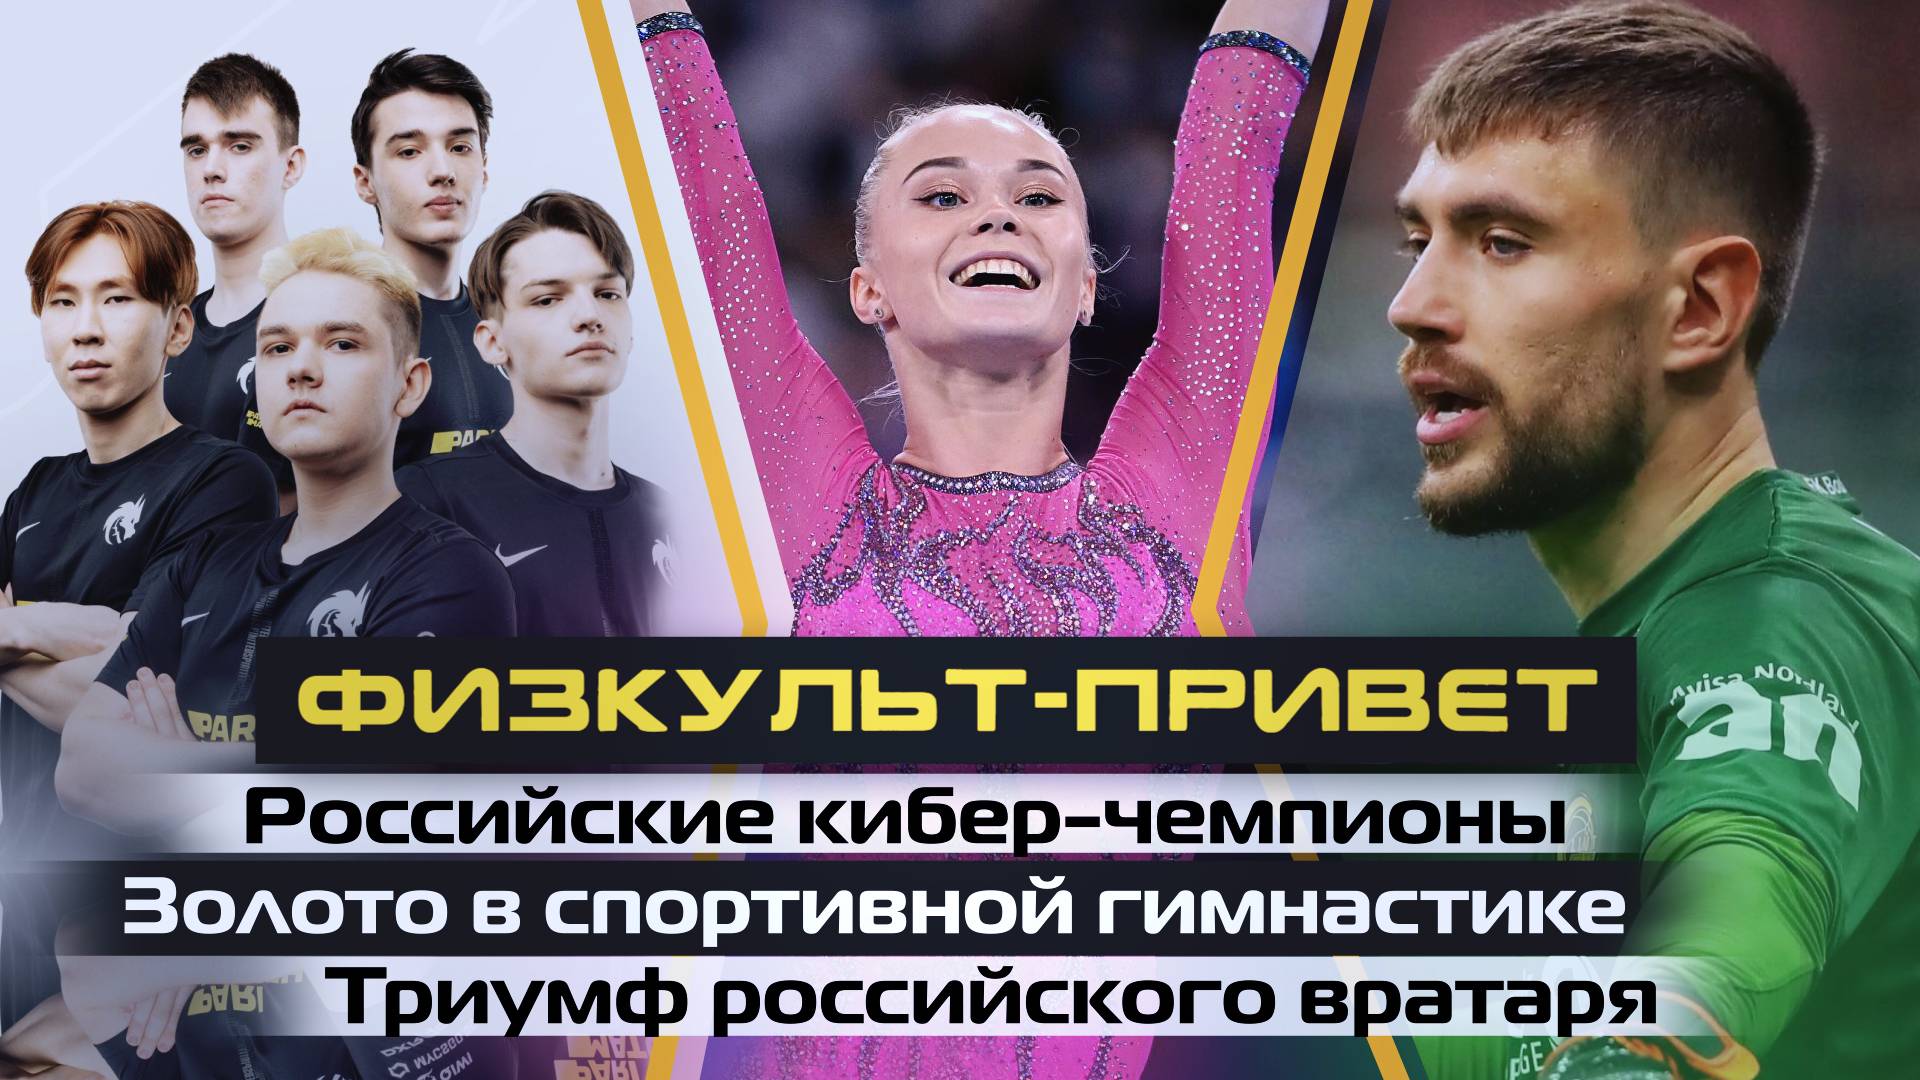 «Физкульт-привет». Российские кибер-чемпионы, золото в гимнастике и триумф вратаря Видео